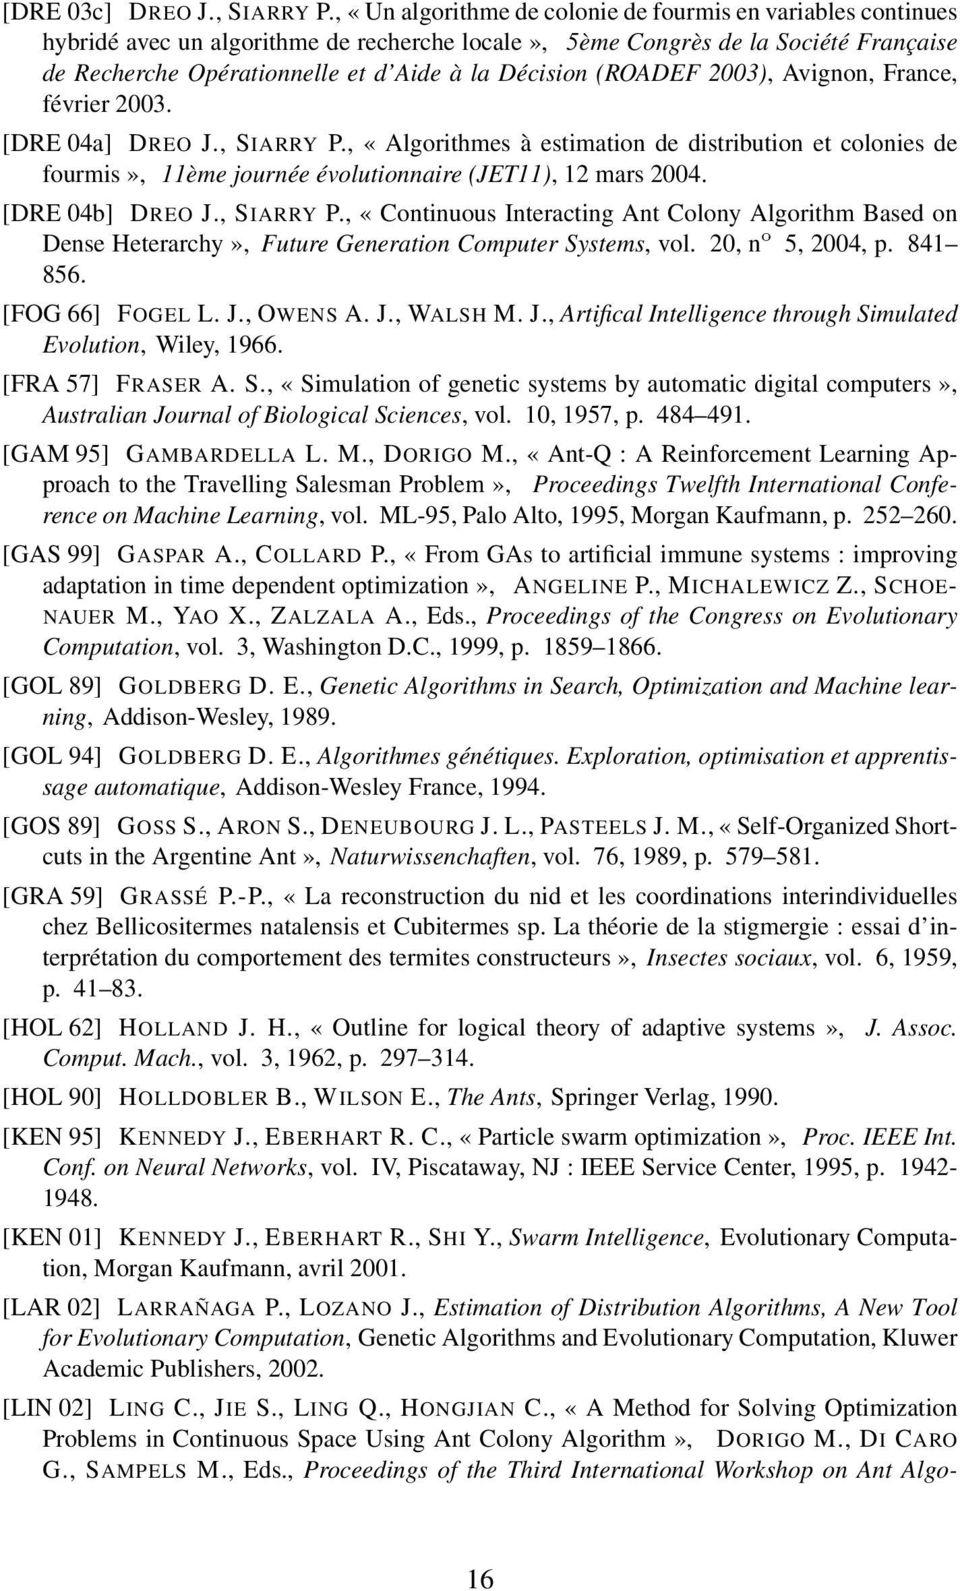 (ROADEF 2003), Avignon, France, février 2003. [DRE 04a] DREO J., SIARRY P., «Algorithmes à estimation de distribution et colonies de fourmis», 11ème journée évolutionnaire (JET11), 12 mars 2004.